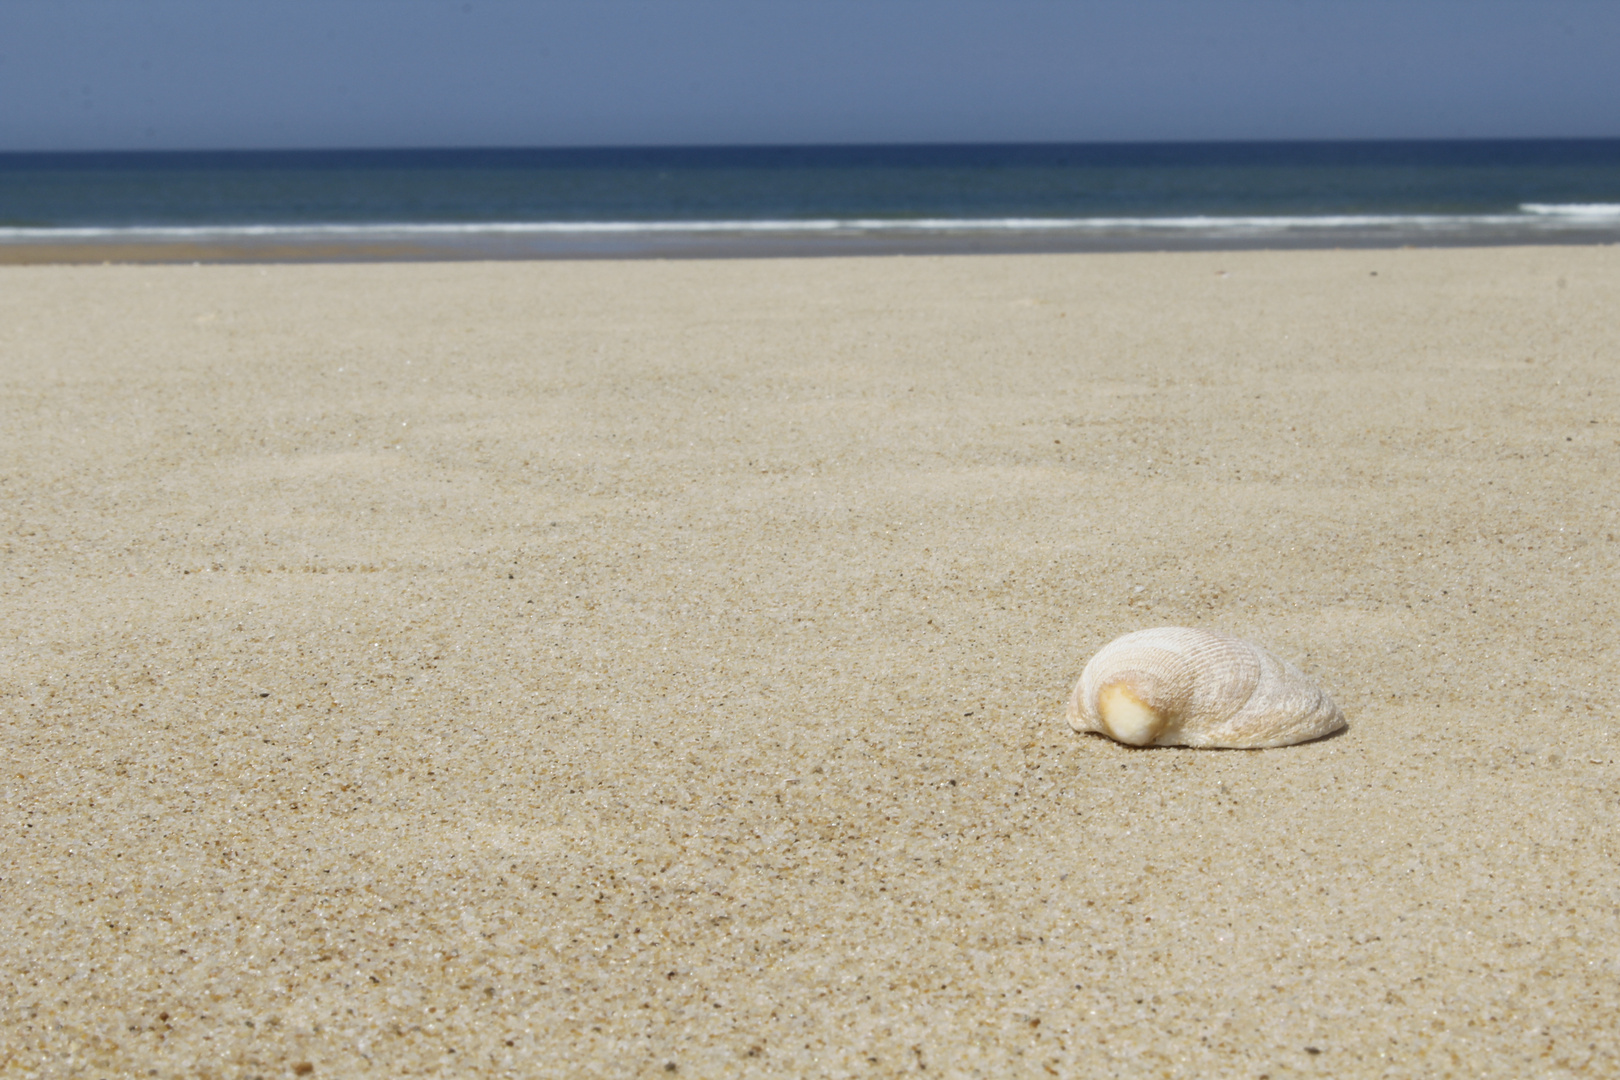 Muschel am Strand - shell on the beach